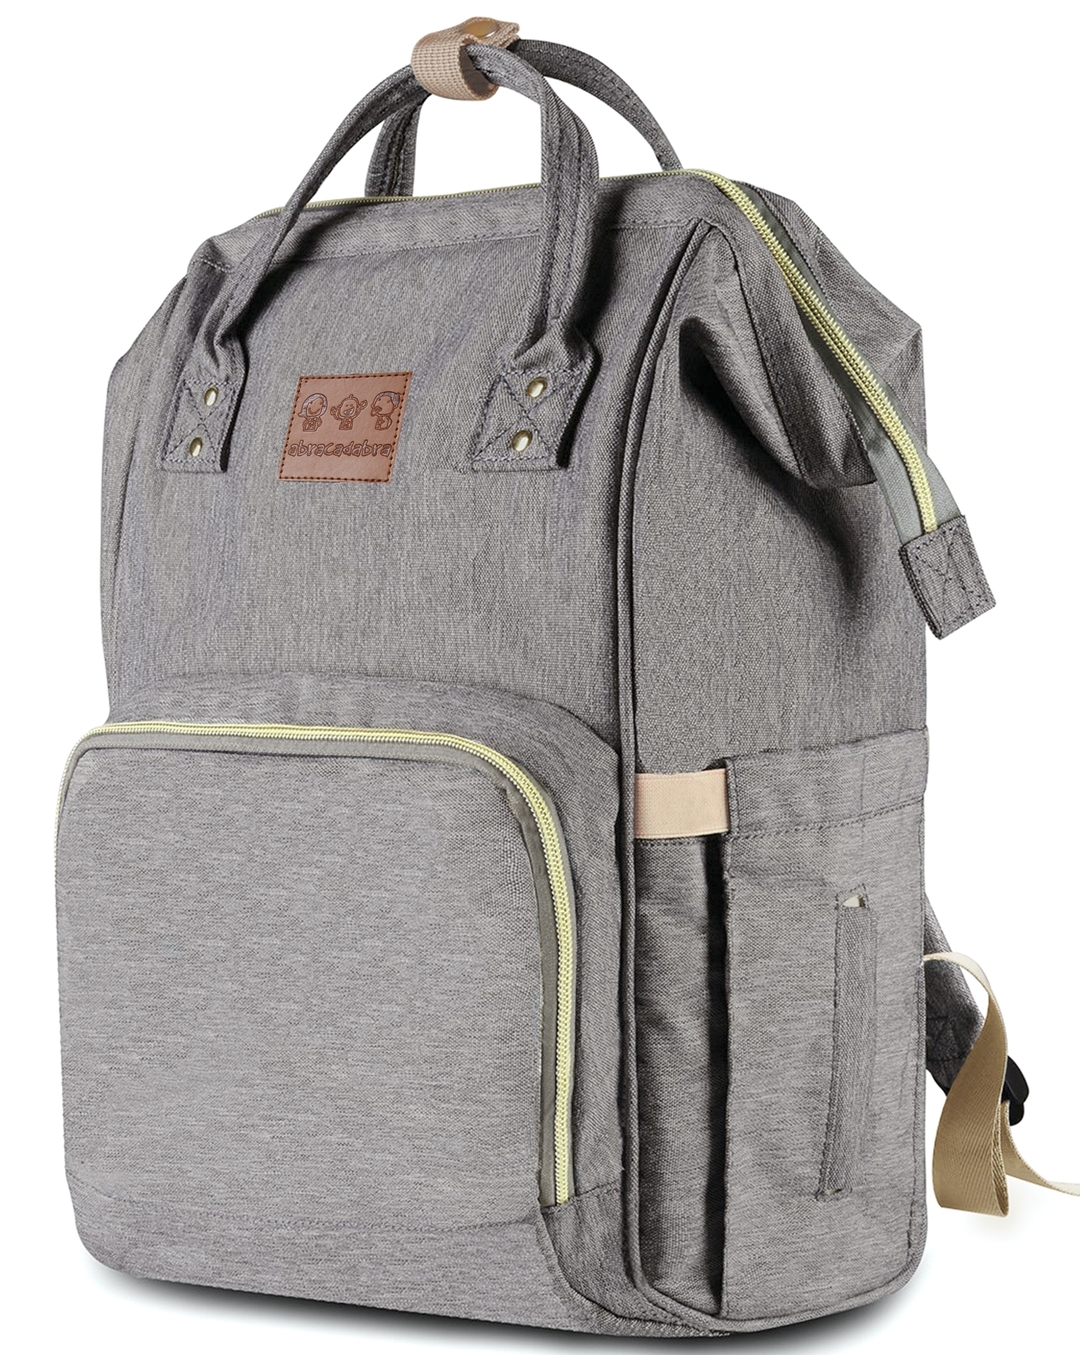 Original L&M Baby Bag I Premium Diaper Bag I Nappy Backpack – L&M Boutique